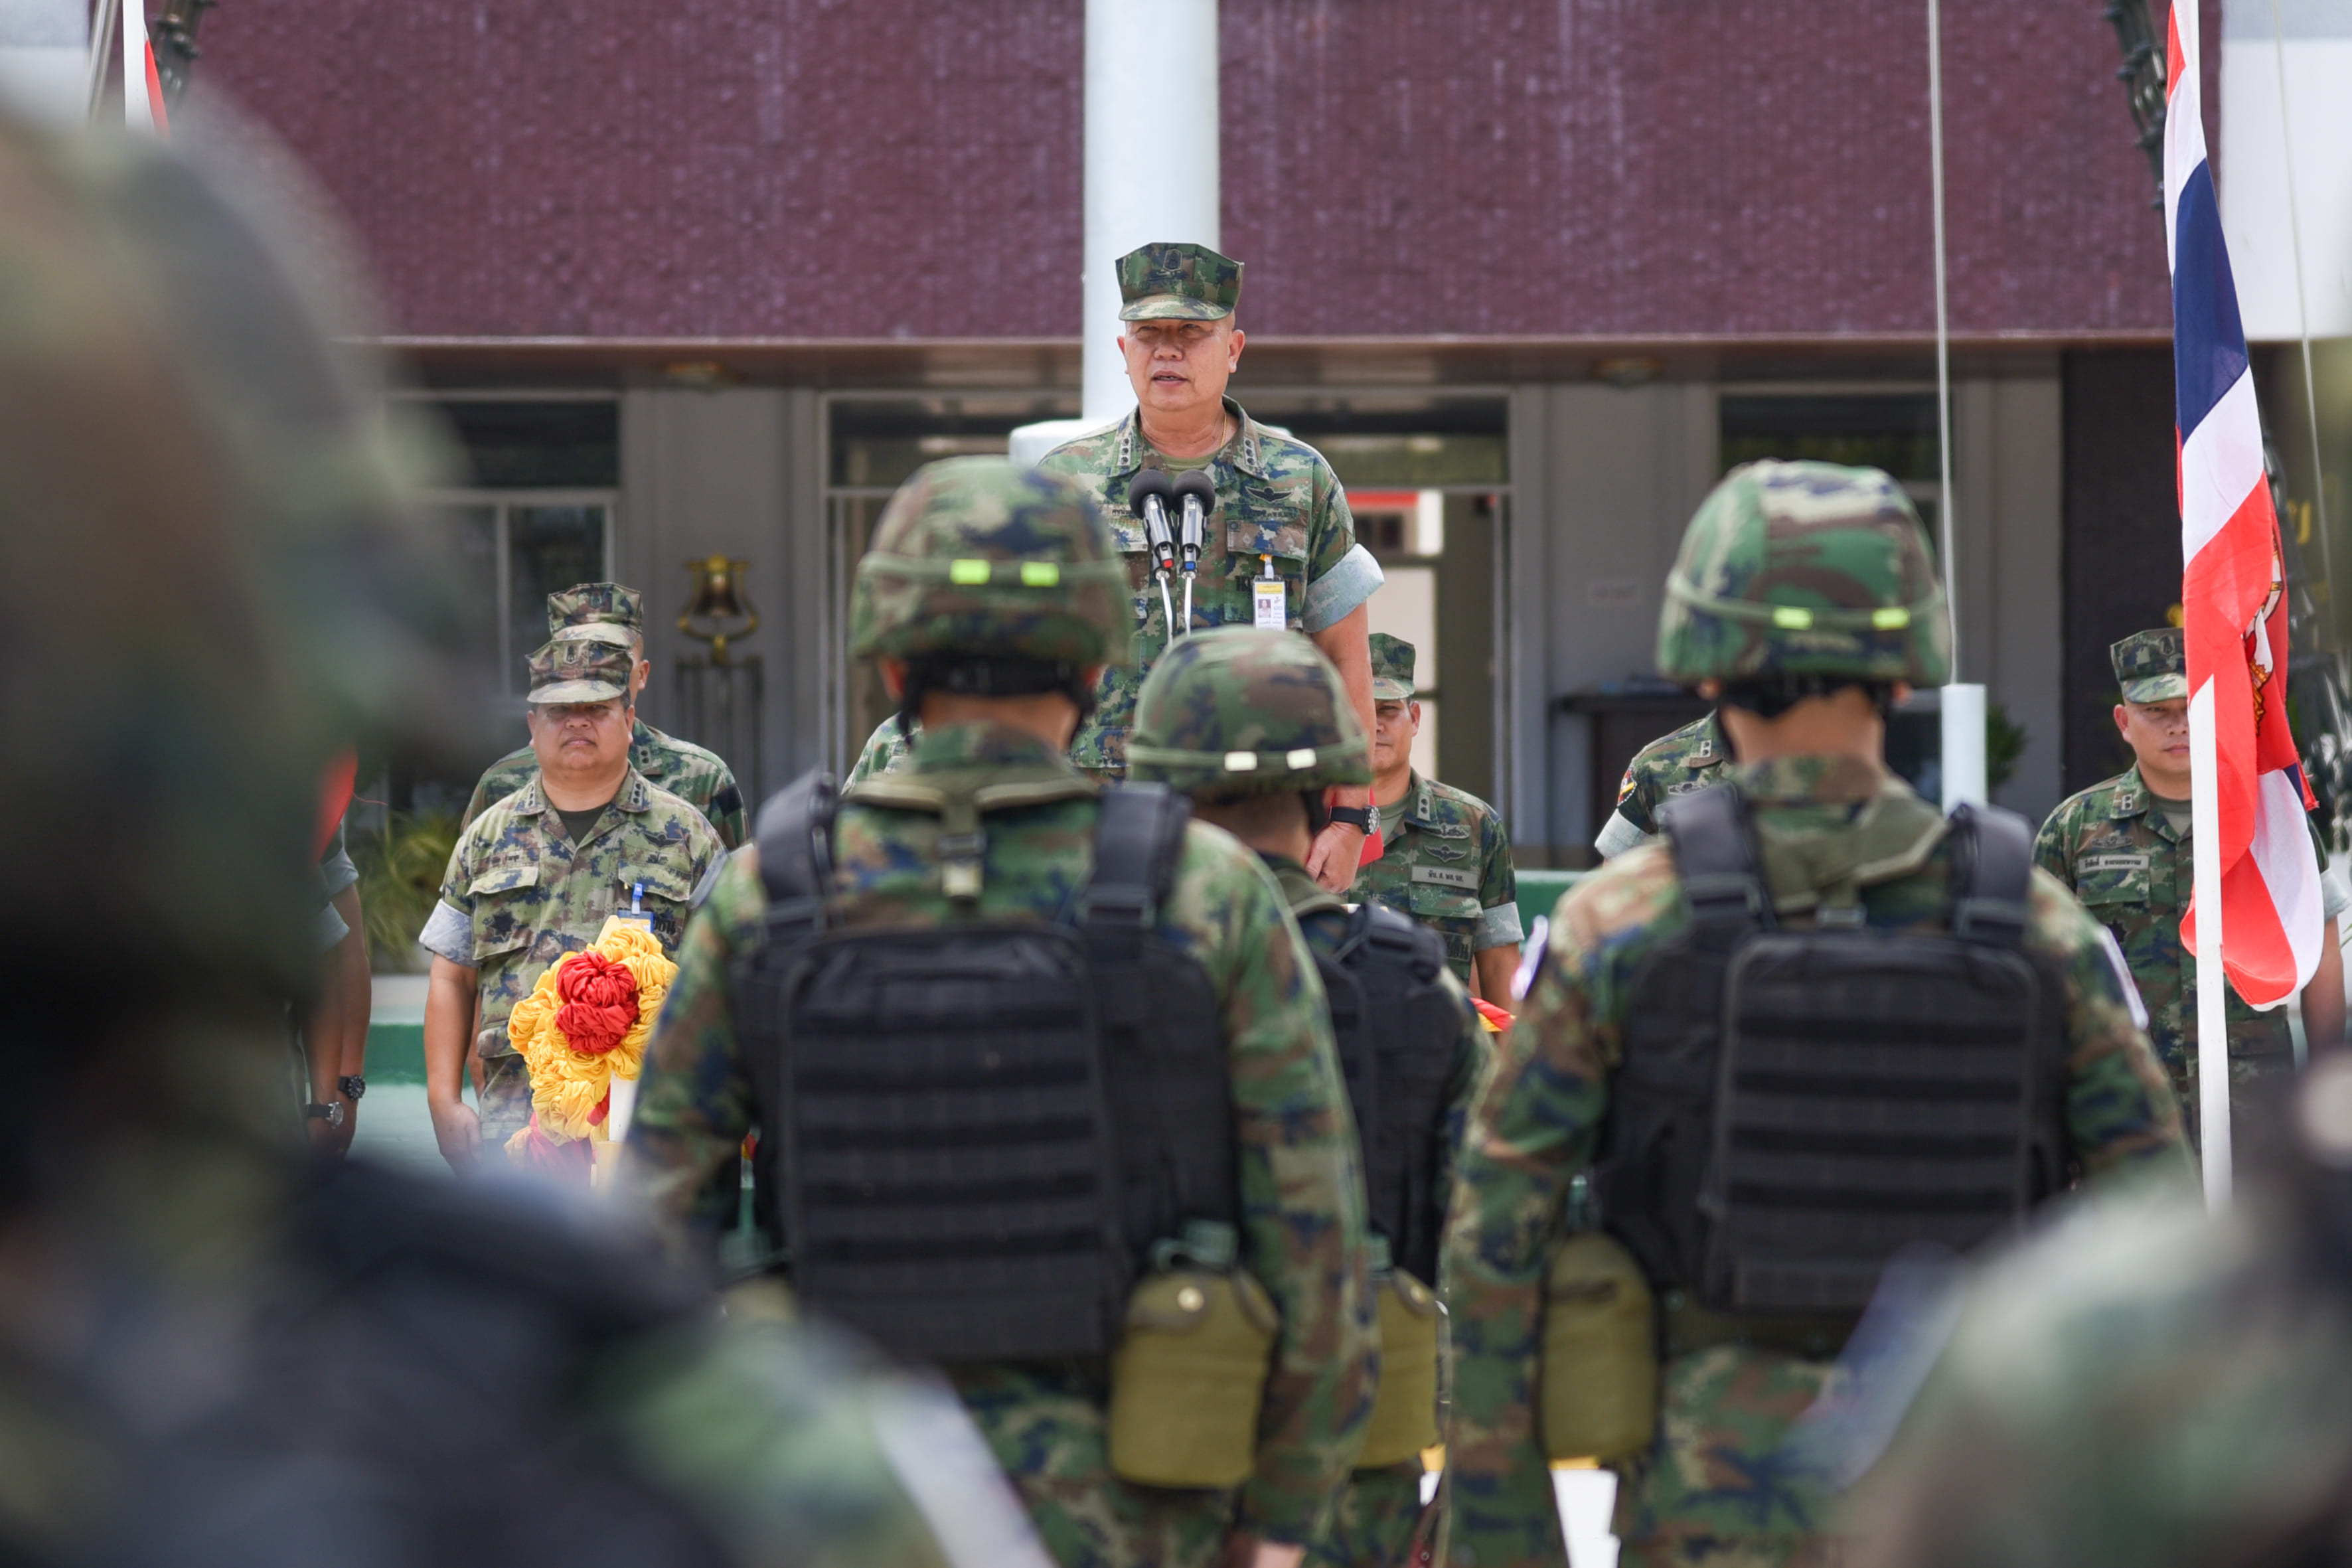 รองผู้บัญชาการกองพลนาวิกโยธิน เป็นผู้แทน ผู้บัญชาการกองพลนาวิกโยธิน เป็นประธานเปิดการฝึก/อบรมกำลังพล ในส่วนนาวิกโยธิน เพื่อเตรียมการฝึกผสม กองทัพเรือไทย – กองทัพเรือสาธารณรัฐประชาชนจีน (BLUE STRIKE 2019)